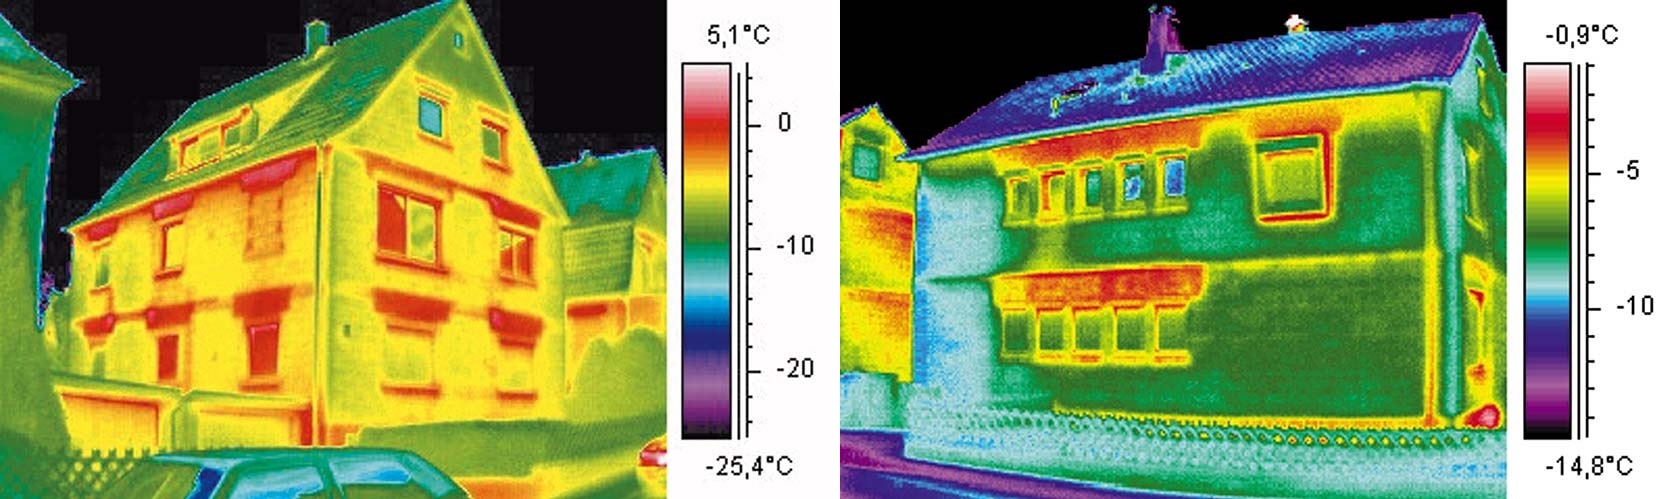 Thermografie von zwei Häusern